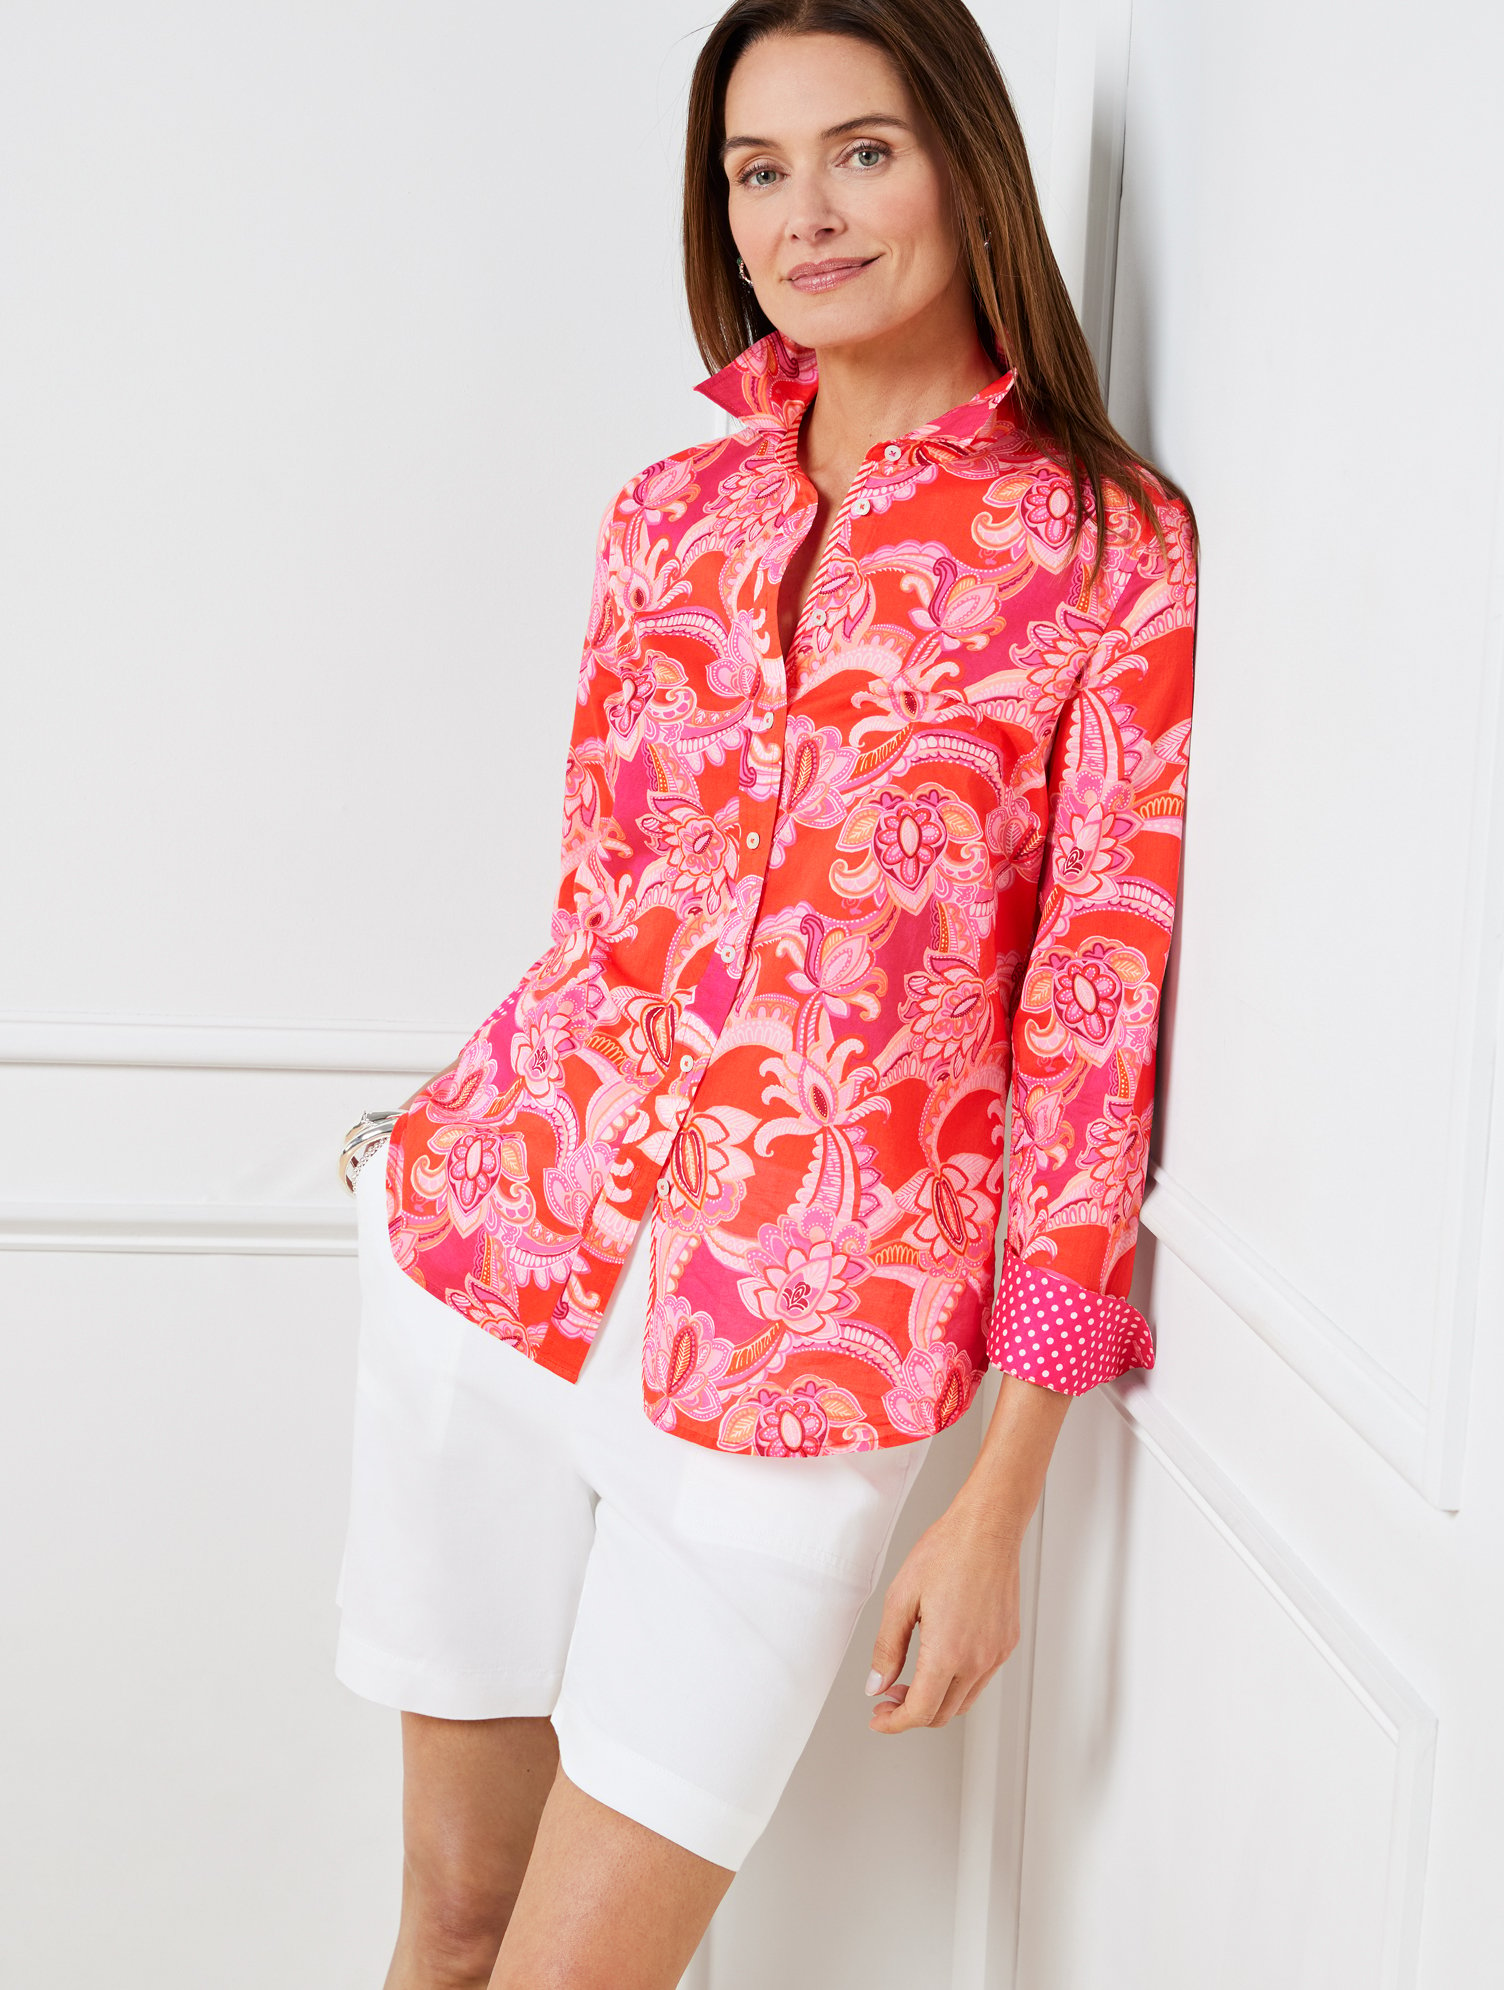 Talbots Cotton Button Front Shirt - Charming Floral - Orange/pink Geranium - 3x  In Orange,pink Geranium